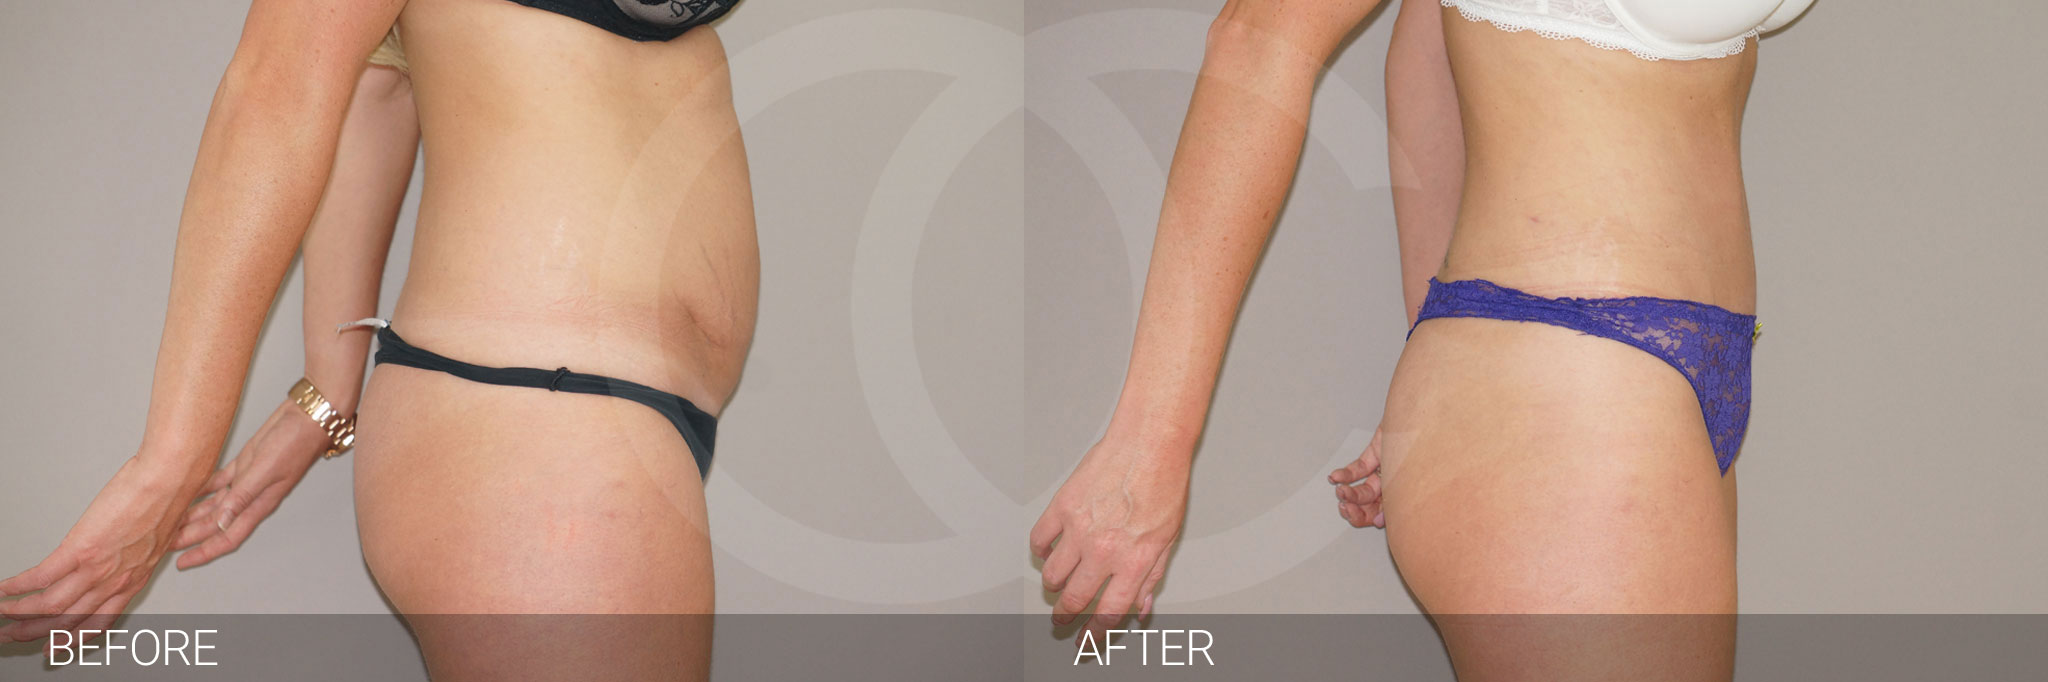 Antes y después Fotos de reducción de abdomen fotos reales de pacientes 4.3 | Ocean Clinic Marbella Madrid